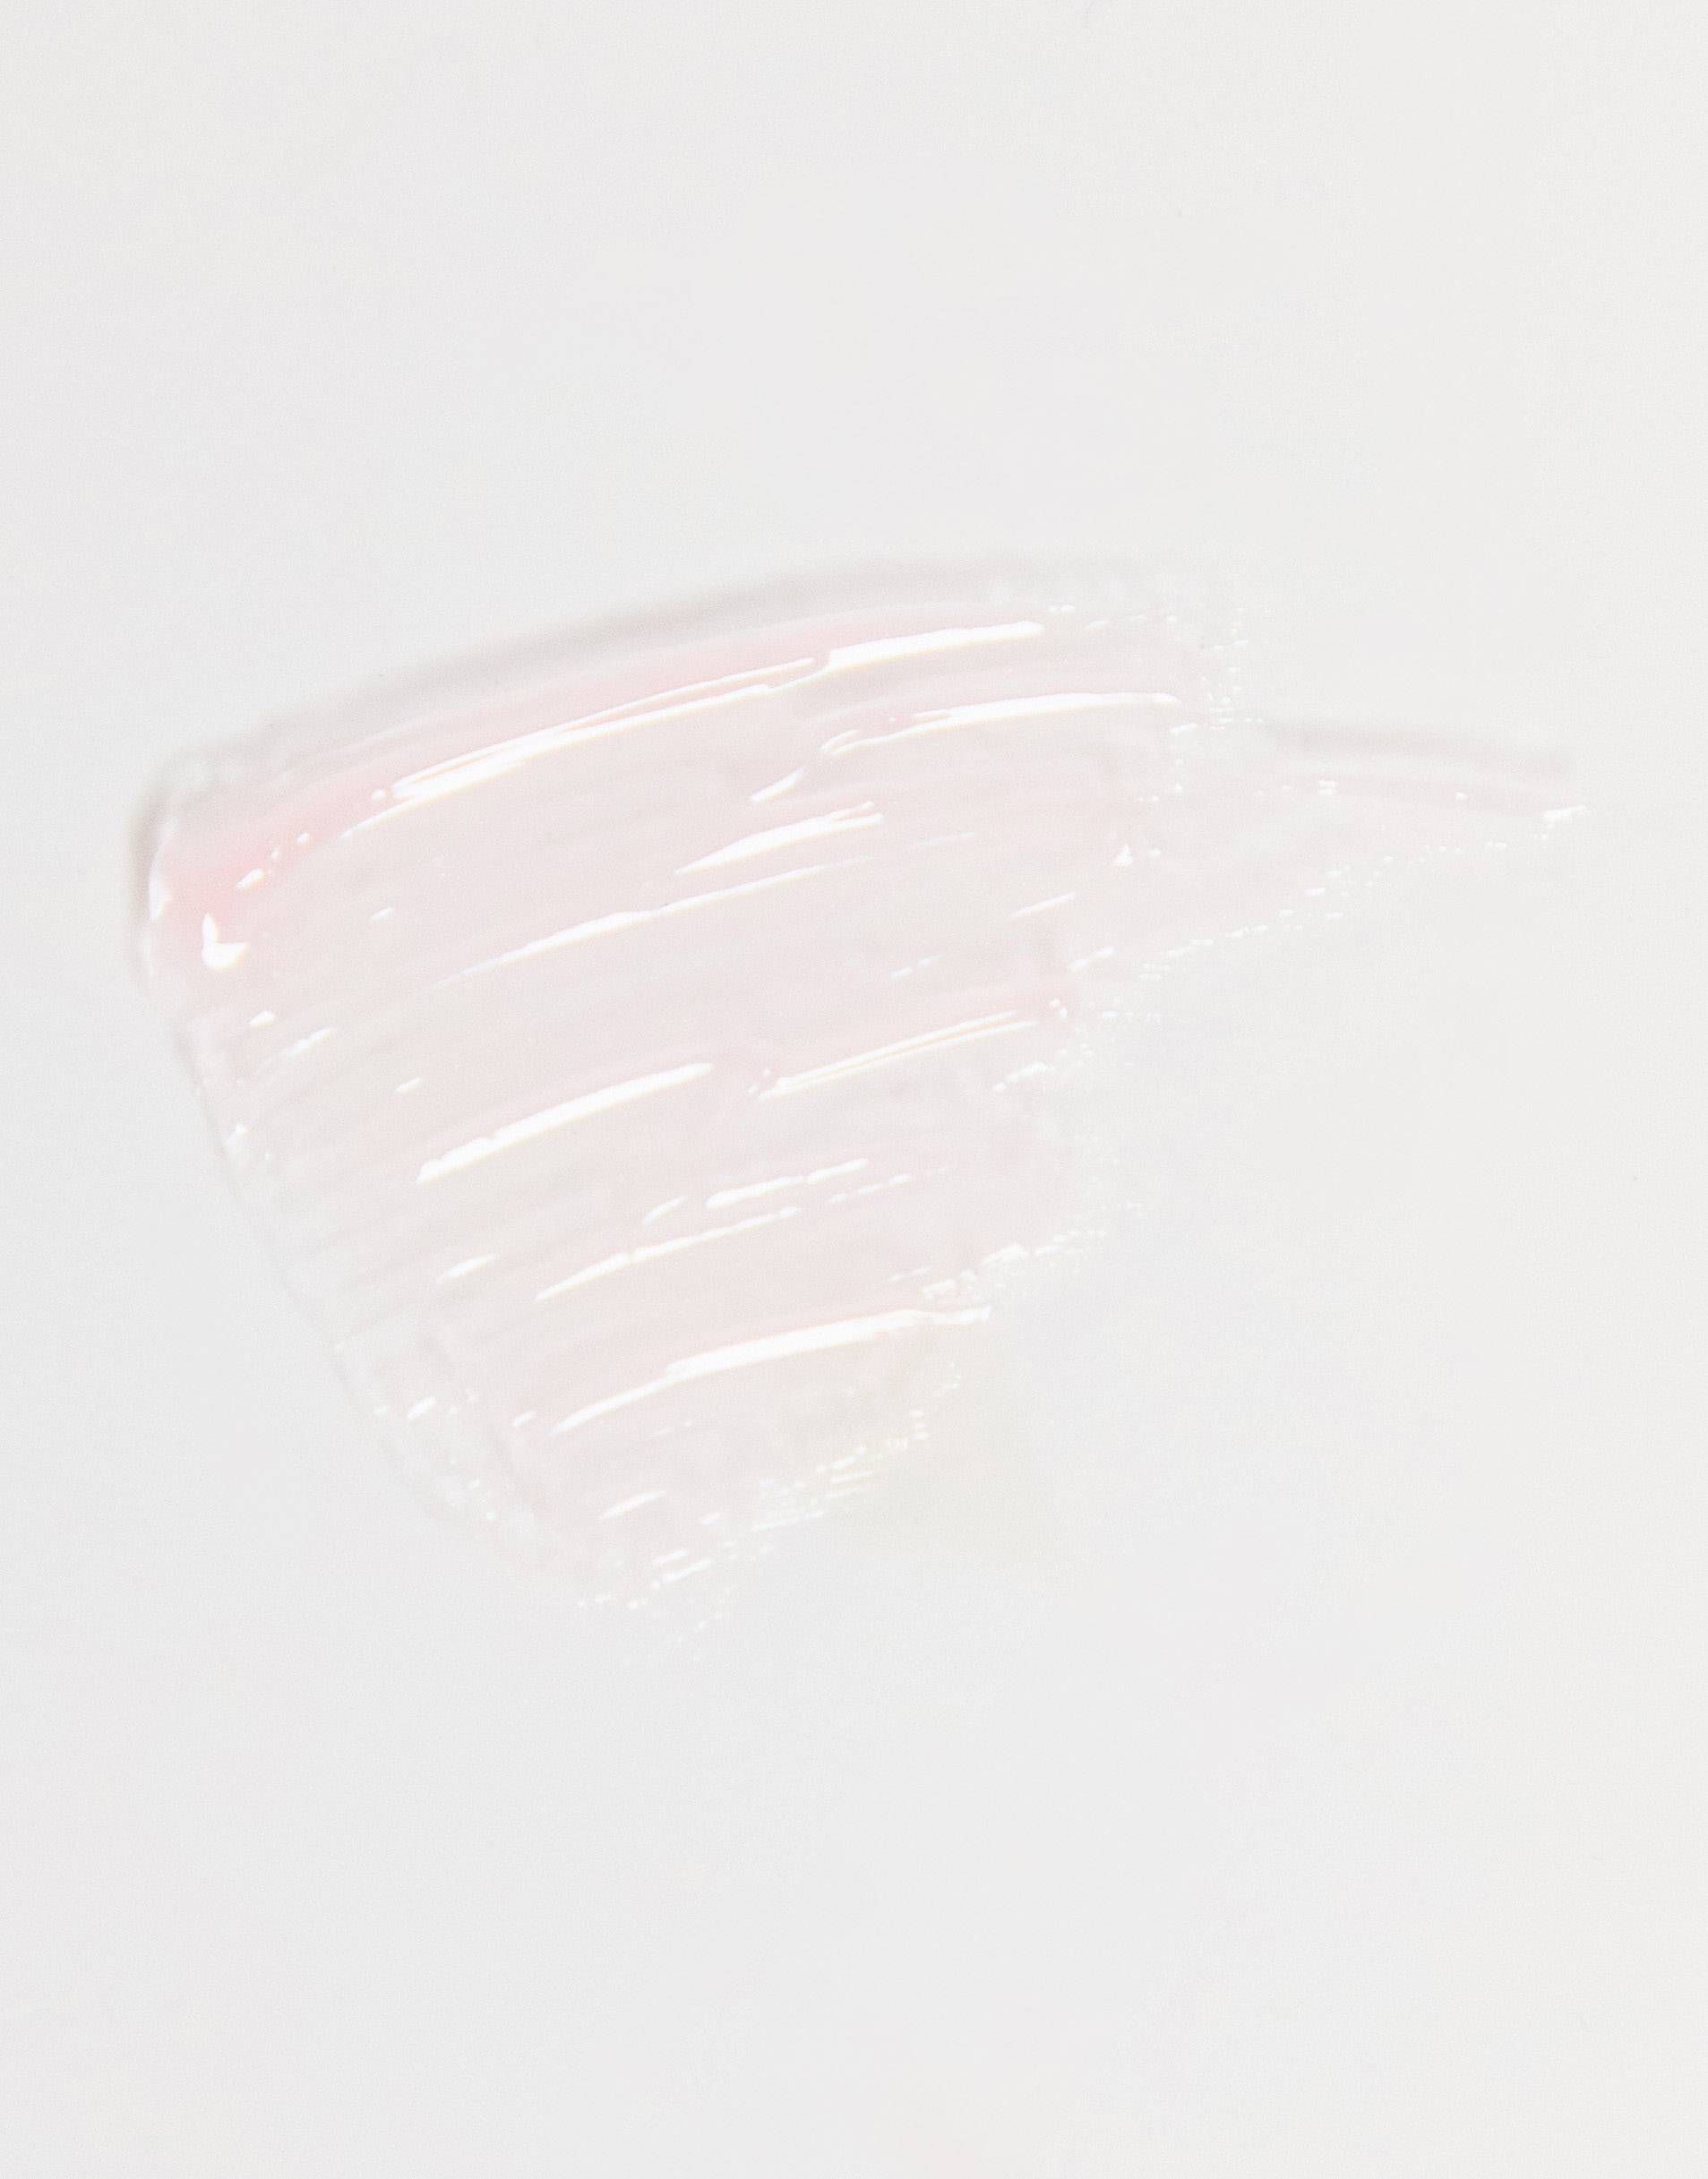 L'Oreal Paris Rouge Signature Plumping Sheer Lip Gloss - 402 Soar | ASOS (Global)